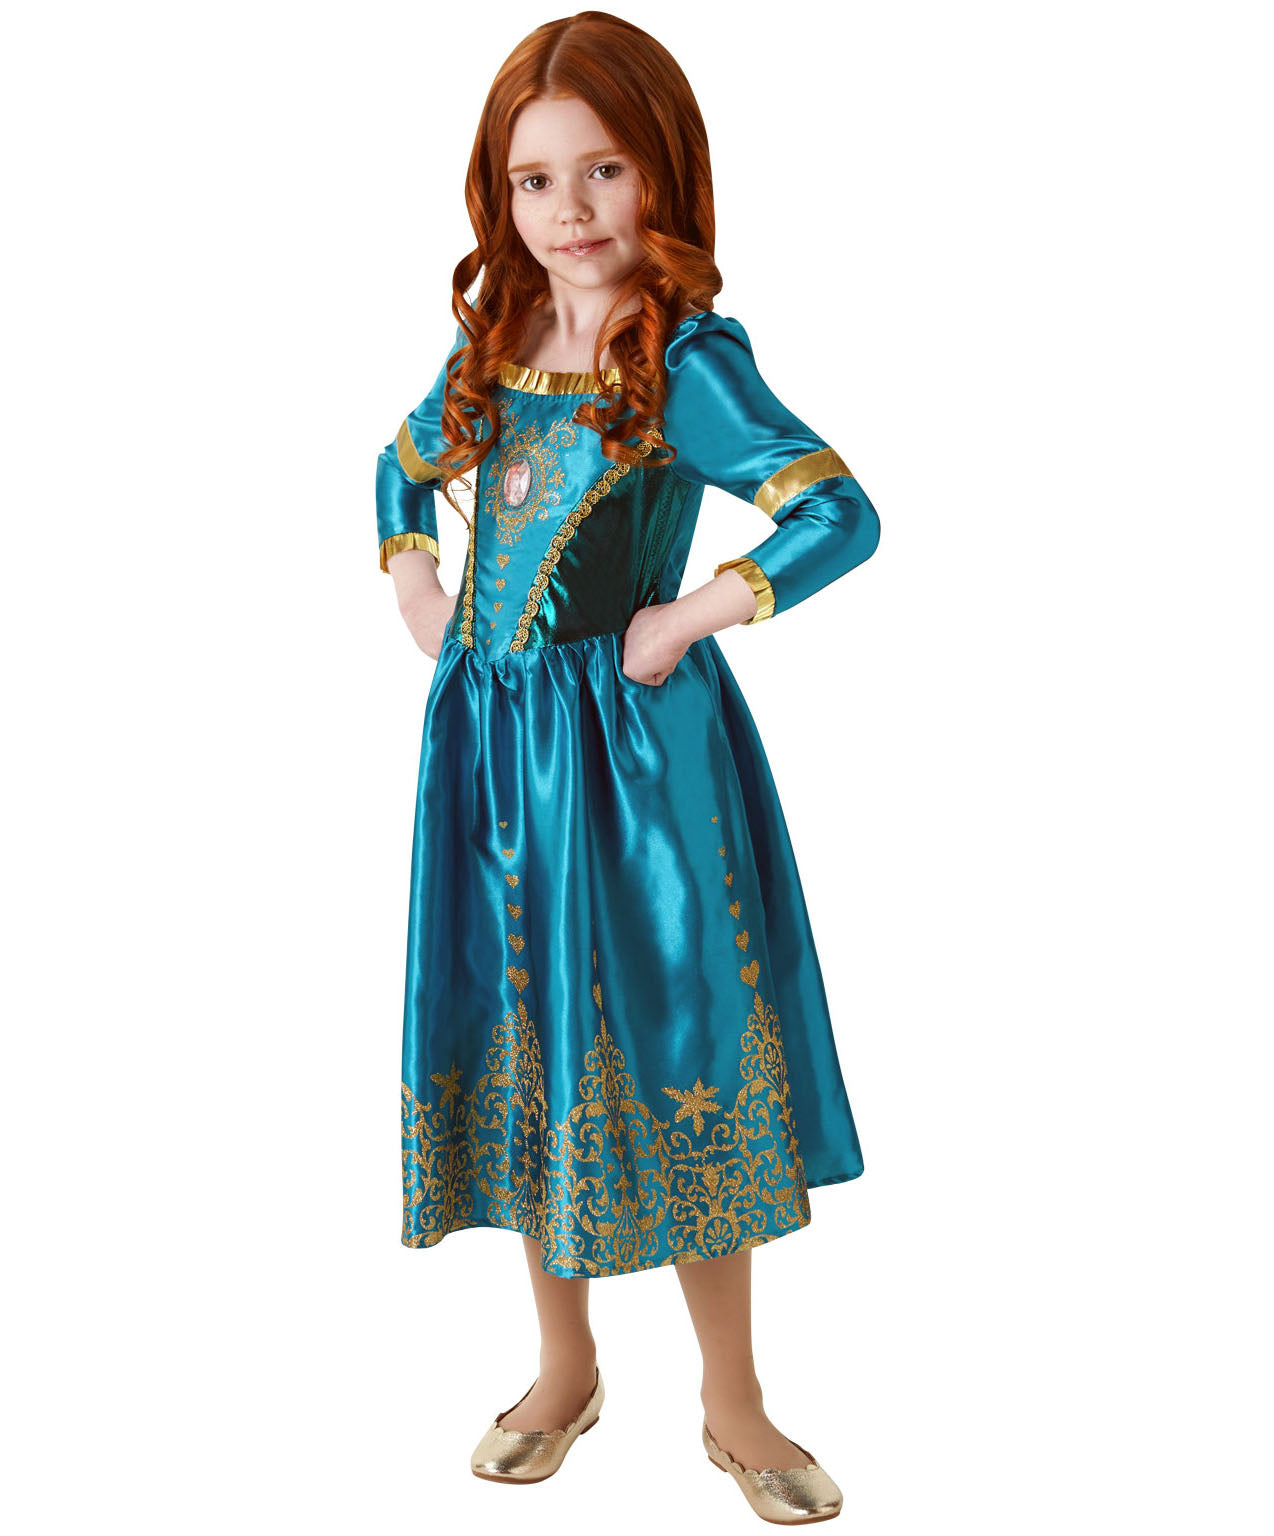 Gem Princess Merida Costume